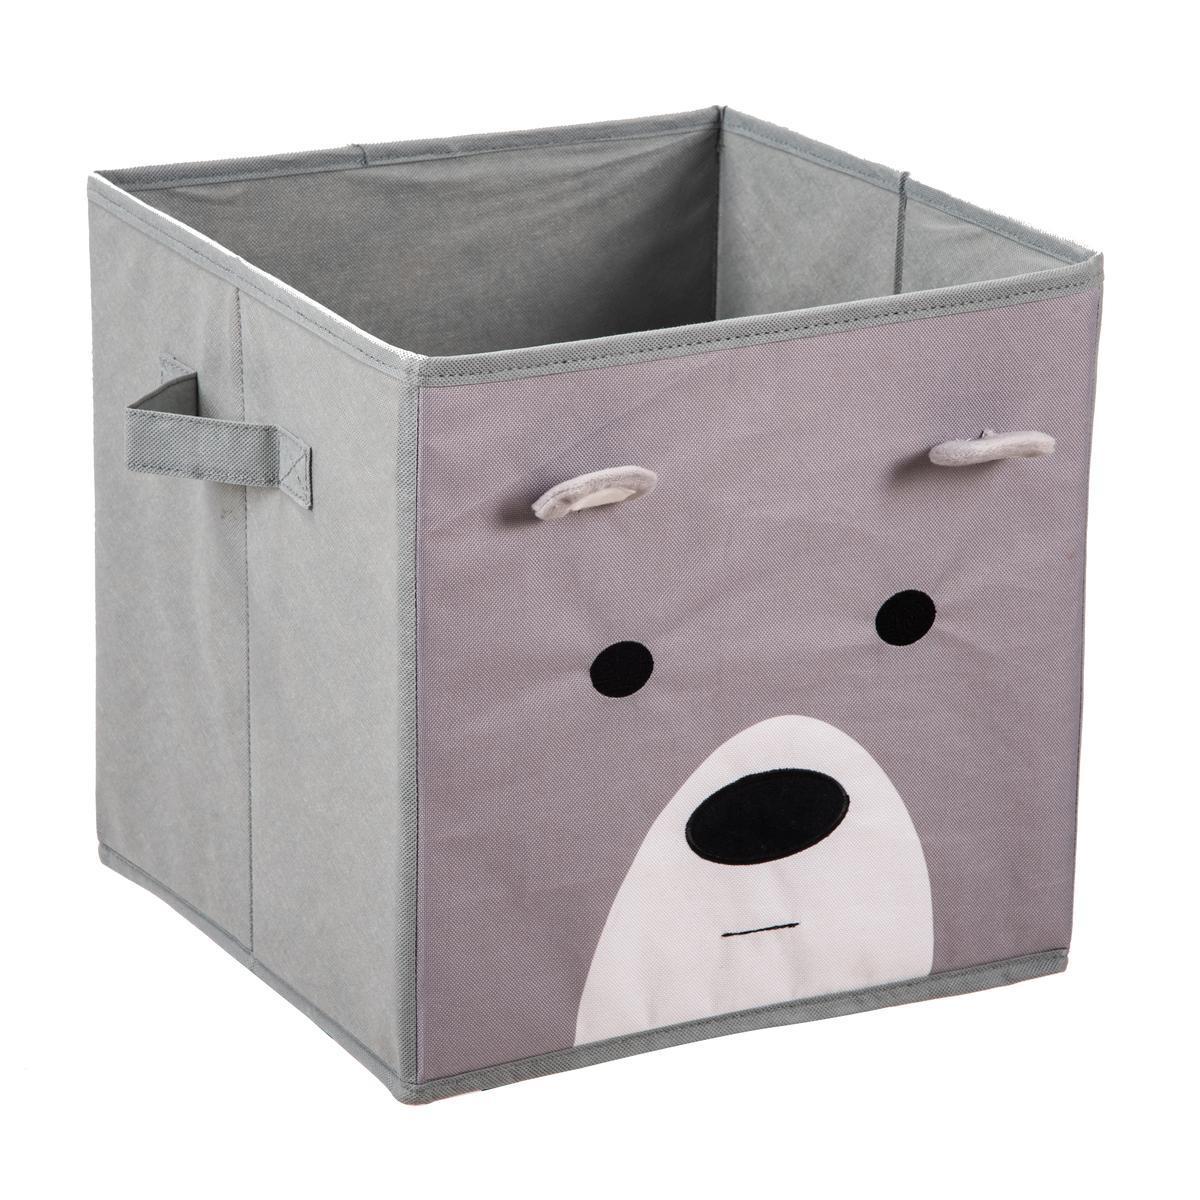 Cube de rangement enfant ours - L 31 x H 31 x l 31 cm - Gris, blanc - MINIK.KOON